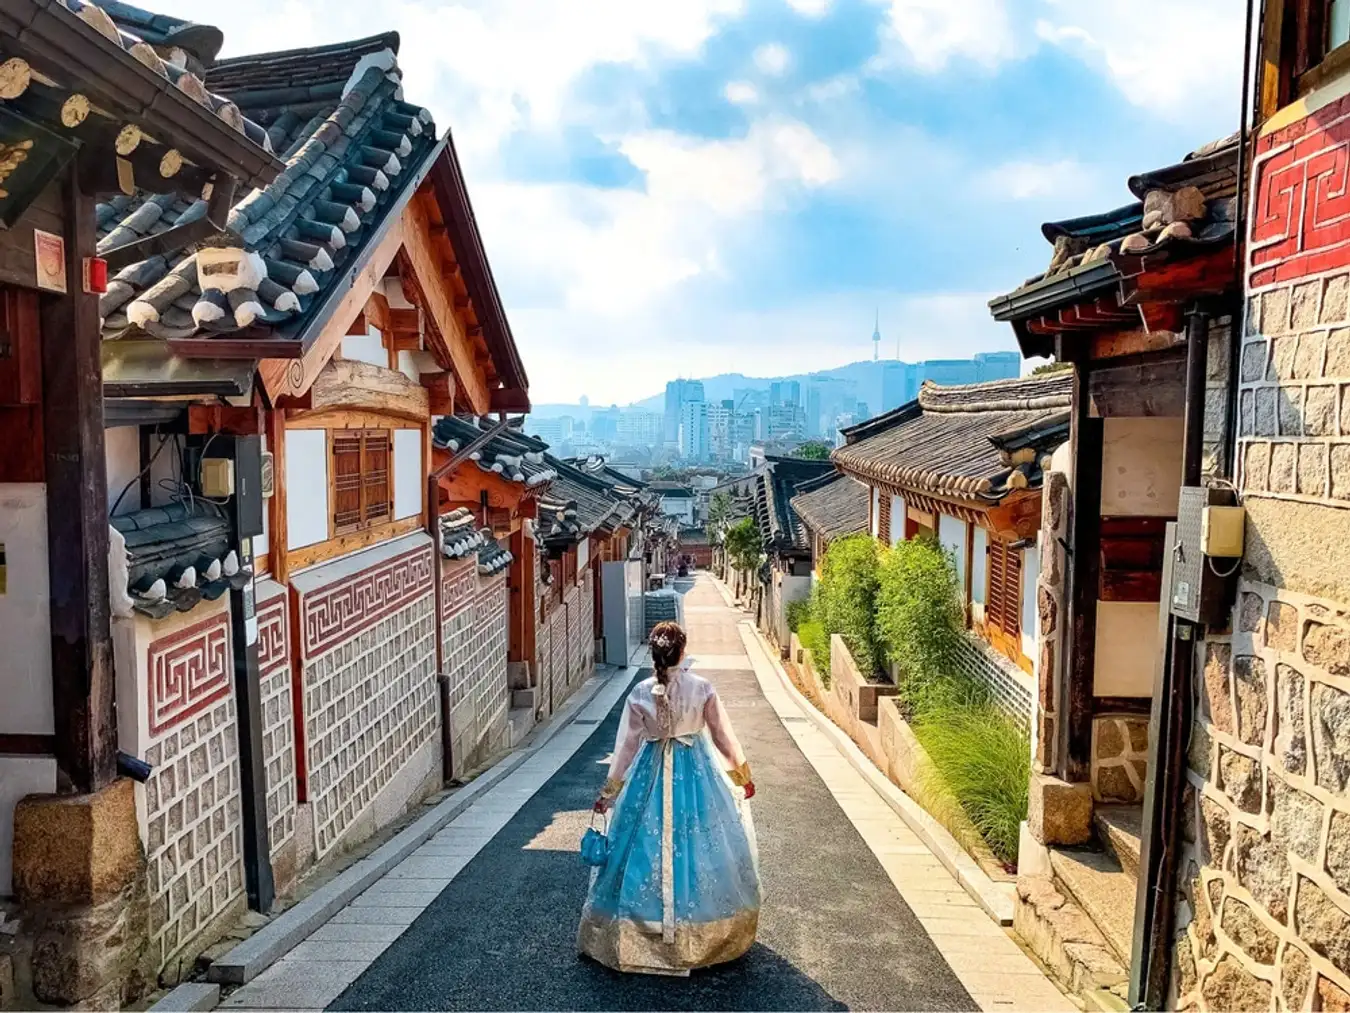 Làng cổ Hanok Bukchon: là nơi tập trung hàng trăm ngôi nhà hanok truyền thống của Hàn Quốc, được xây dựng từ triều đại Joseon.